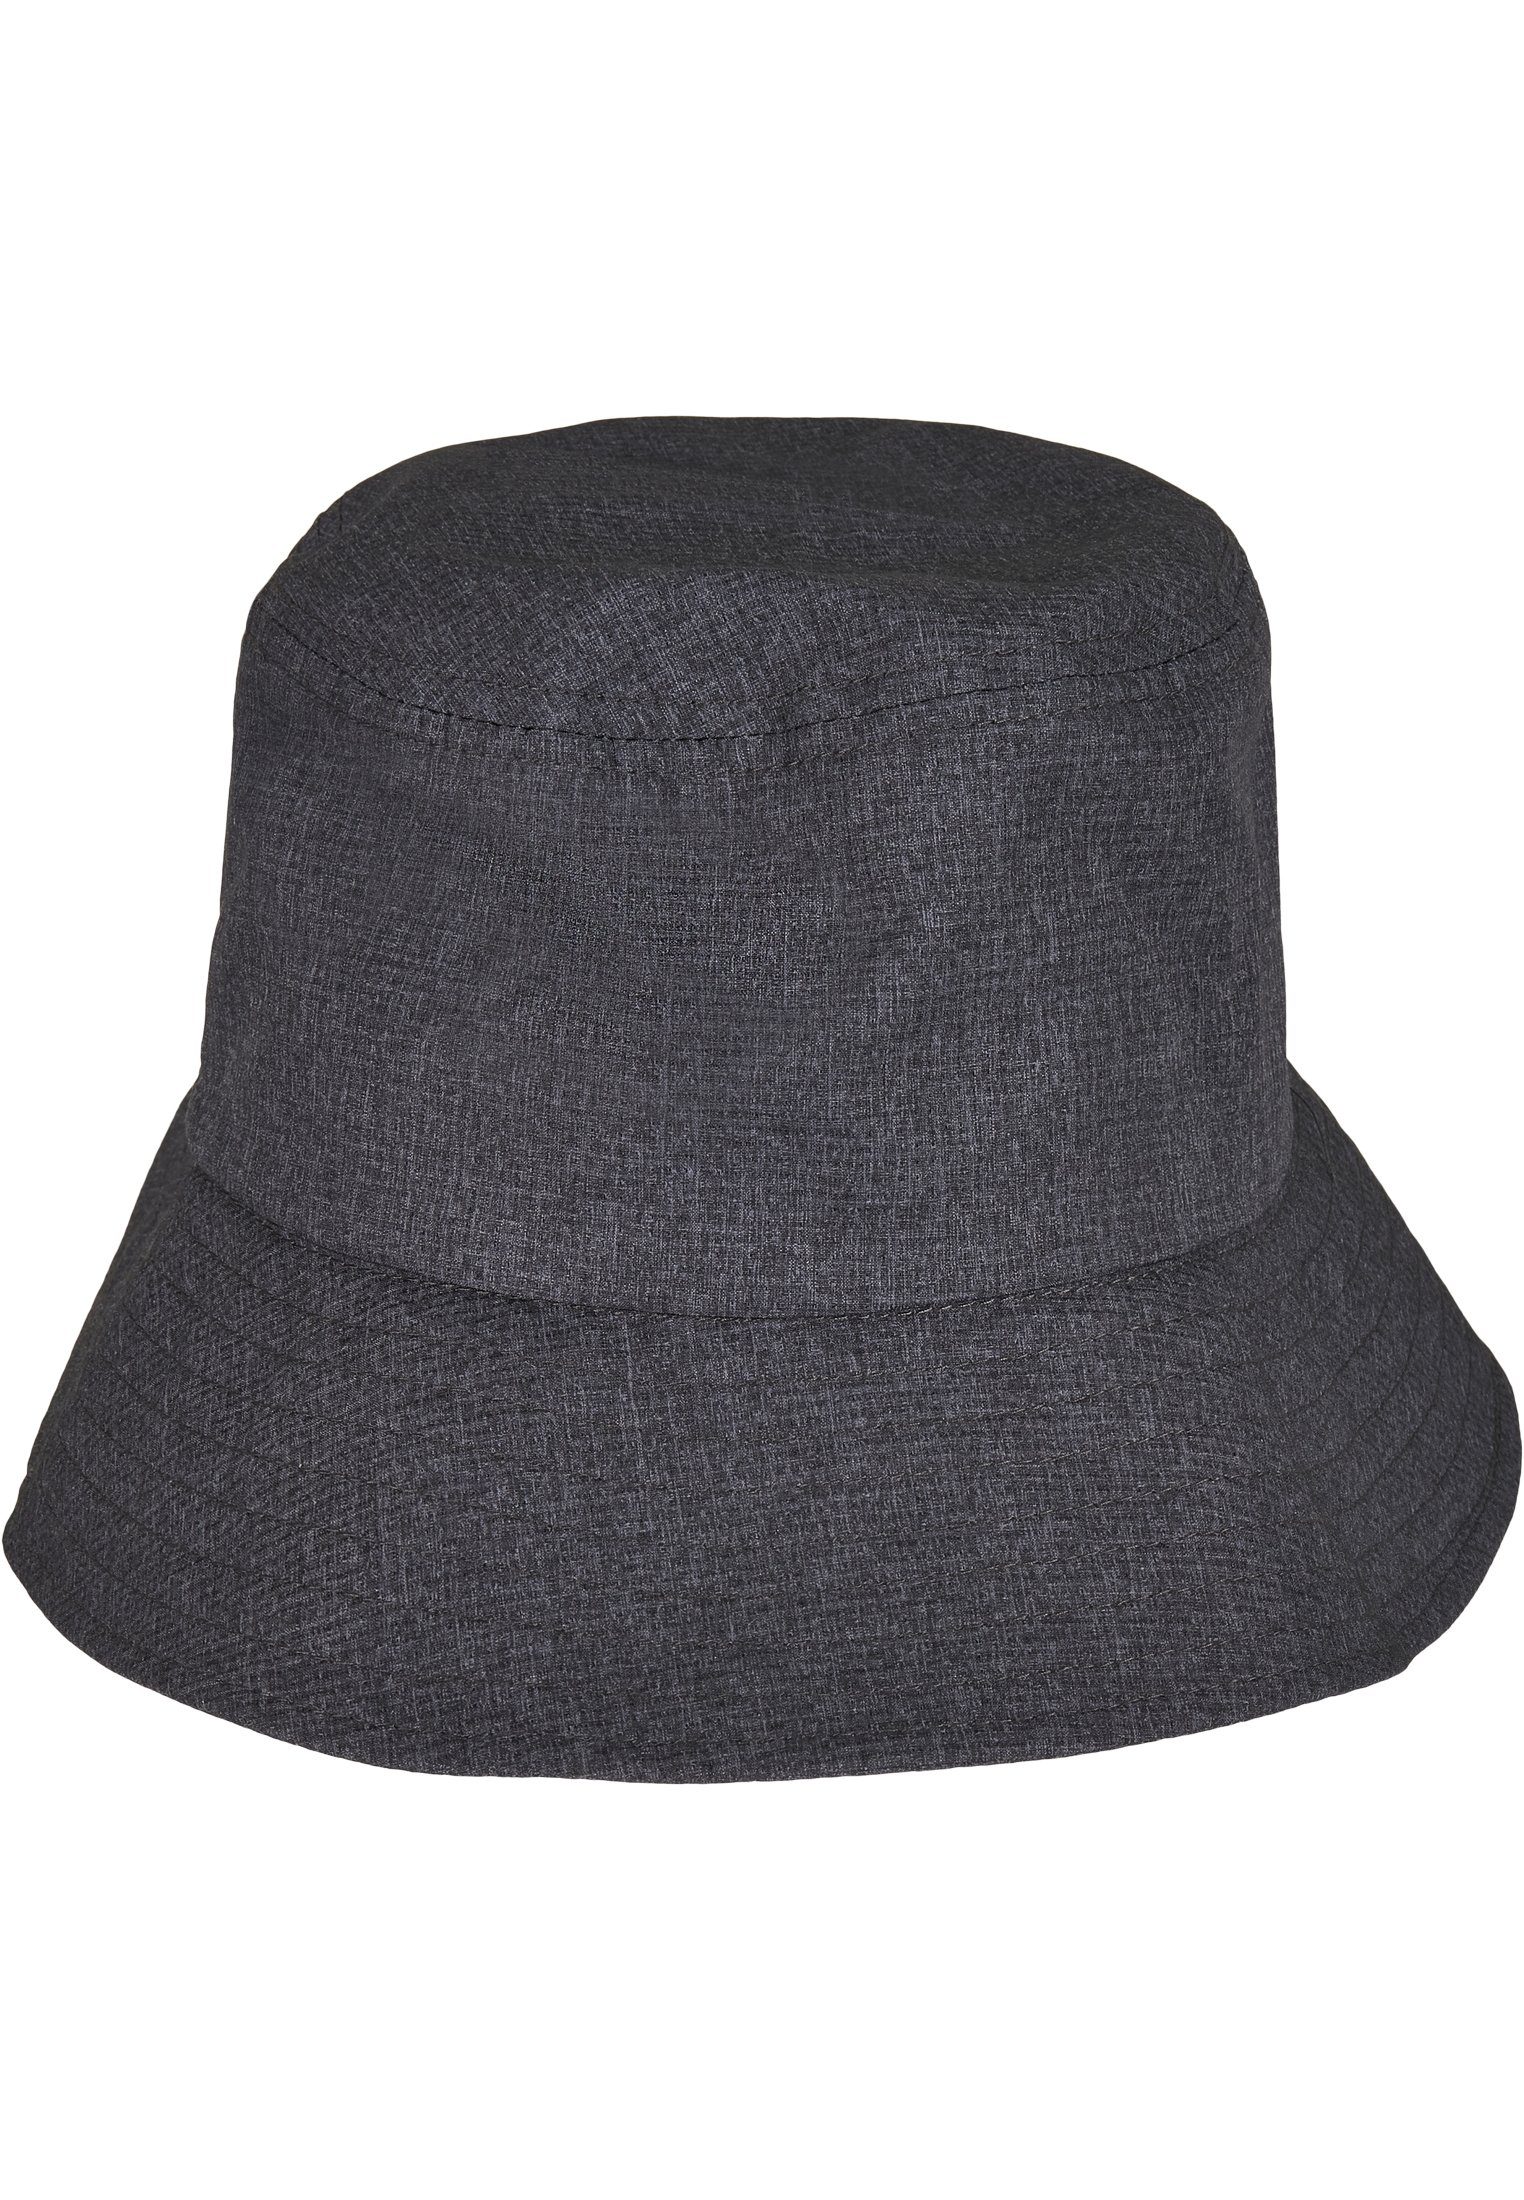 Adjustable Cap Bucket heathergrey Flexfit Flexfit Hat Bucket Hat Flex